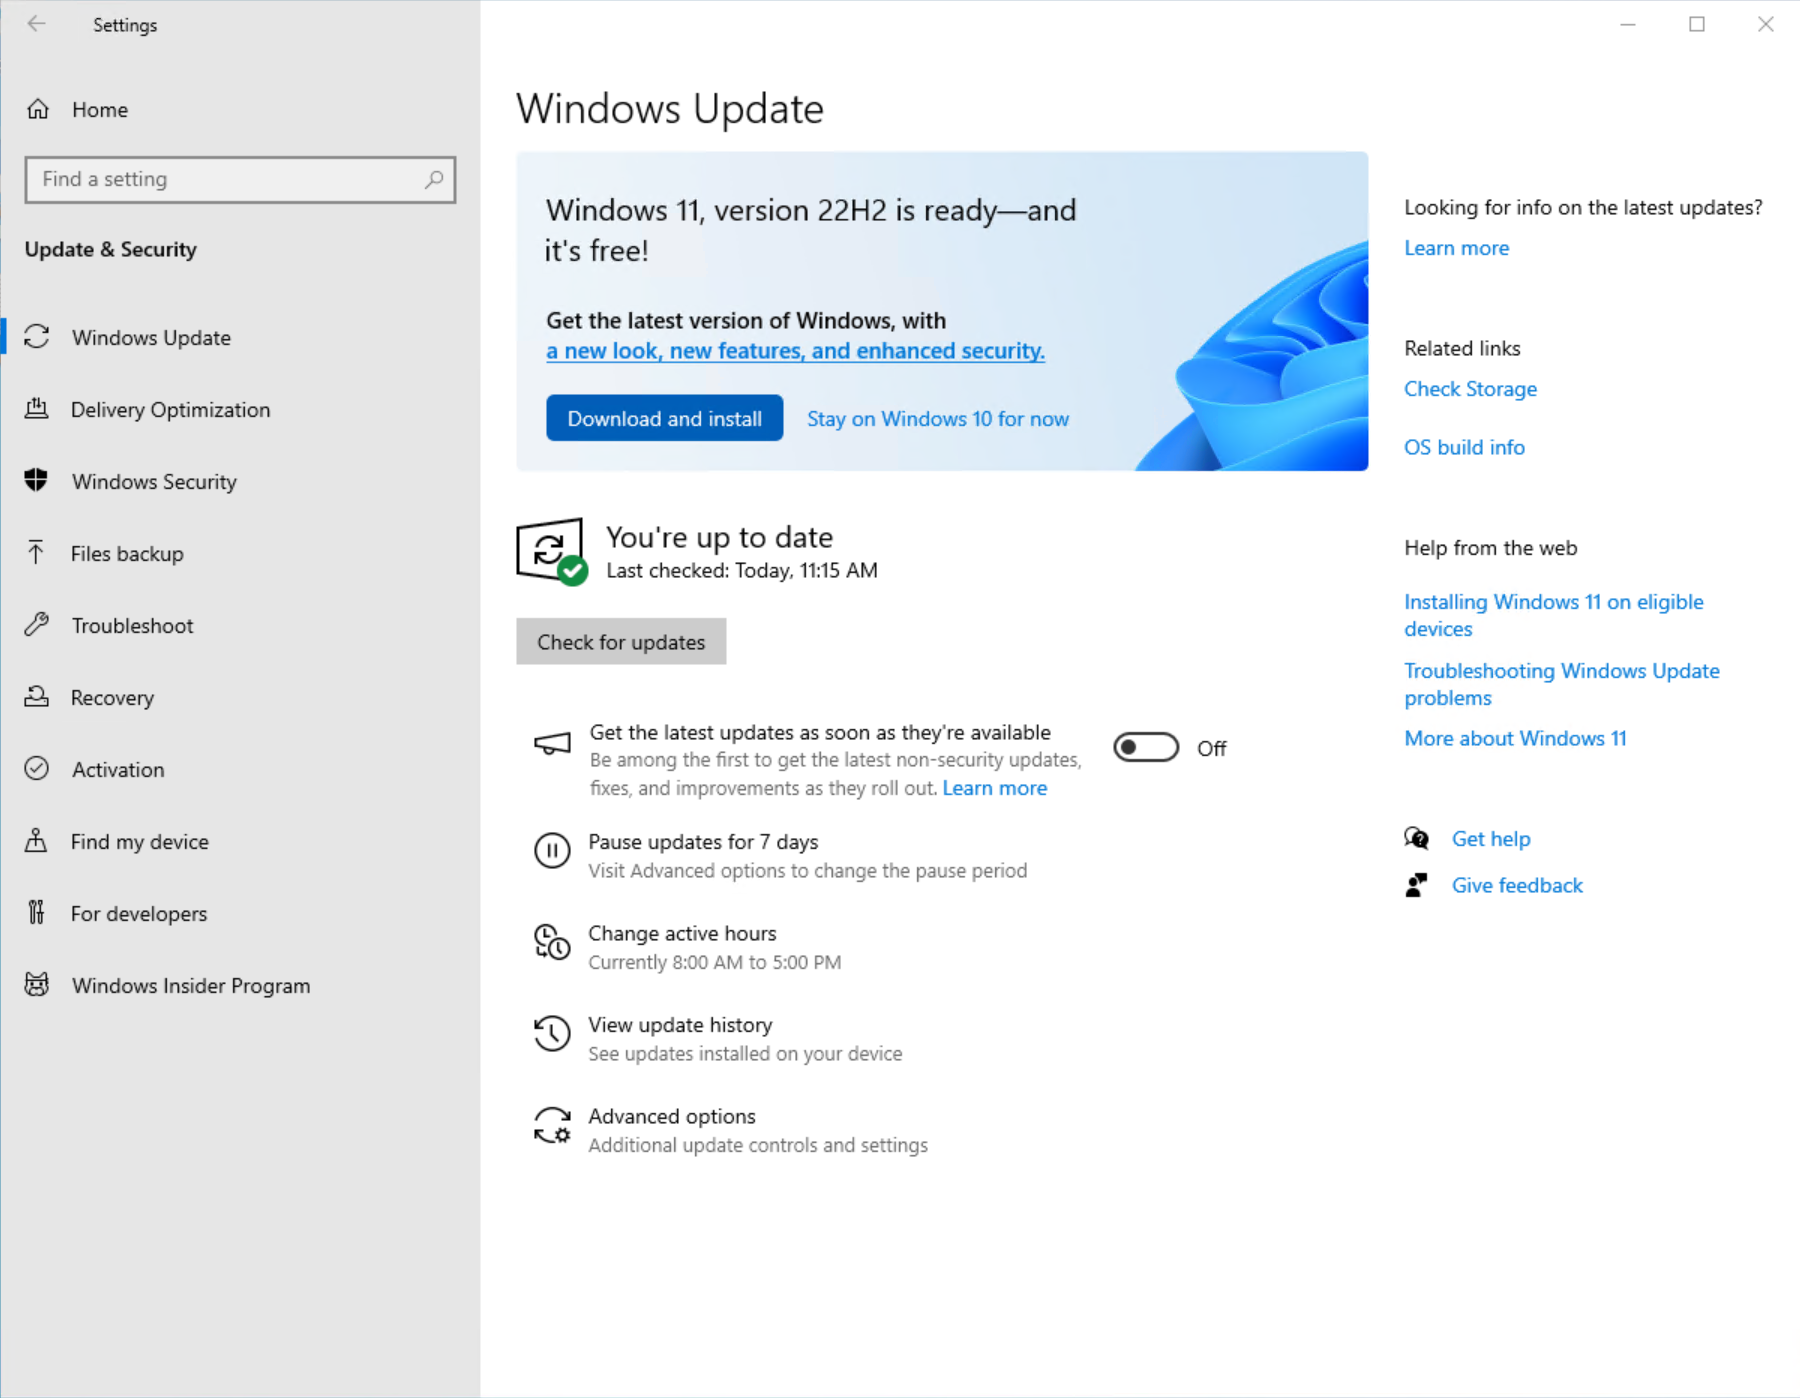 Снимок экрана: страница клиентский компонент Центра обновления Windows в разделе "Параметры", на которой показано, что Windows 11 готов к скачиванию и установке.